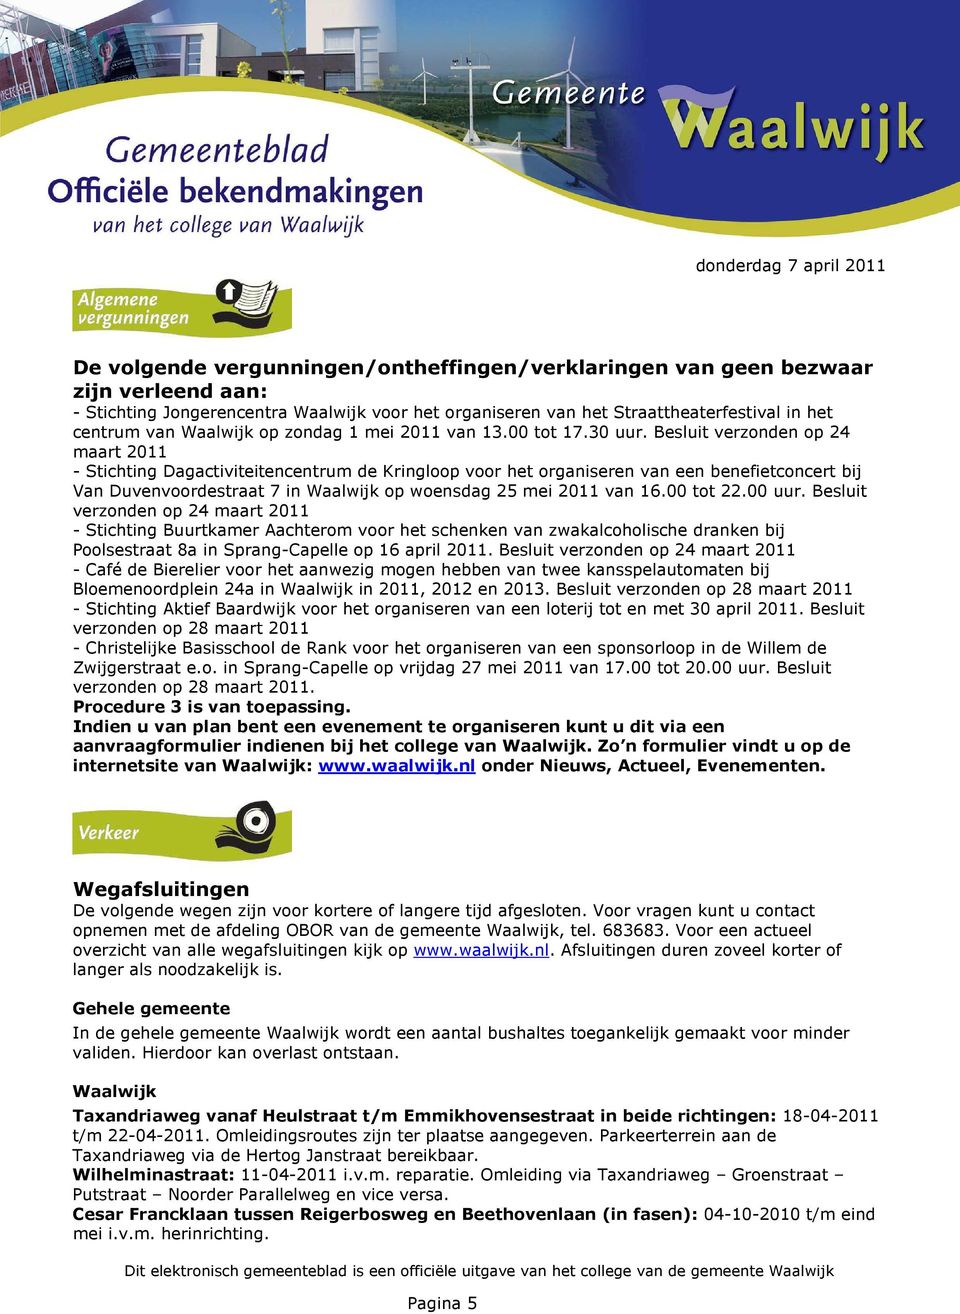 Besluit verzonden op 24 maart 2011 - Stichting Dagactiviteitencentrum de Kringloop voor het organiseren van een benefietconcert bij Van Duvenvoordestraat 7 in op woensdag 25 mei 2011 van 16.00 tot 22.